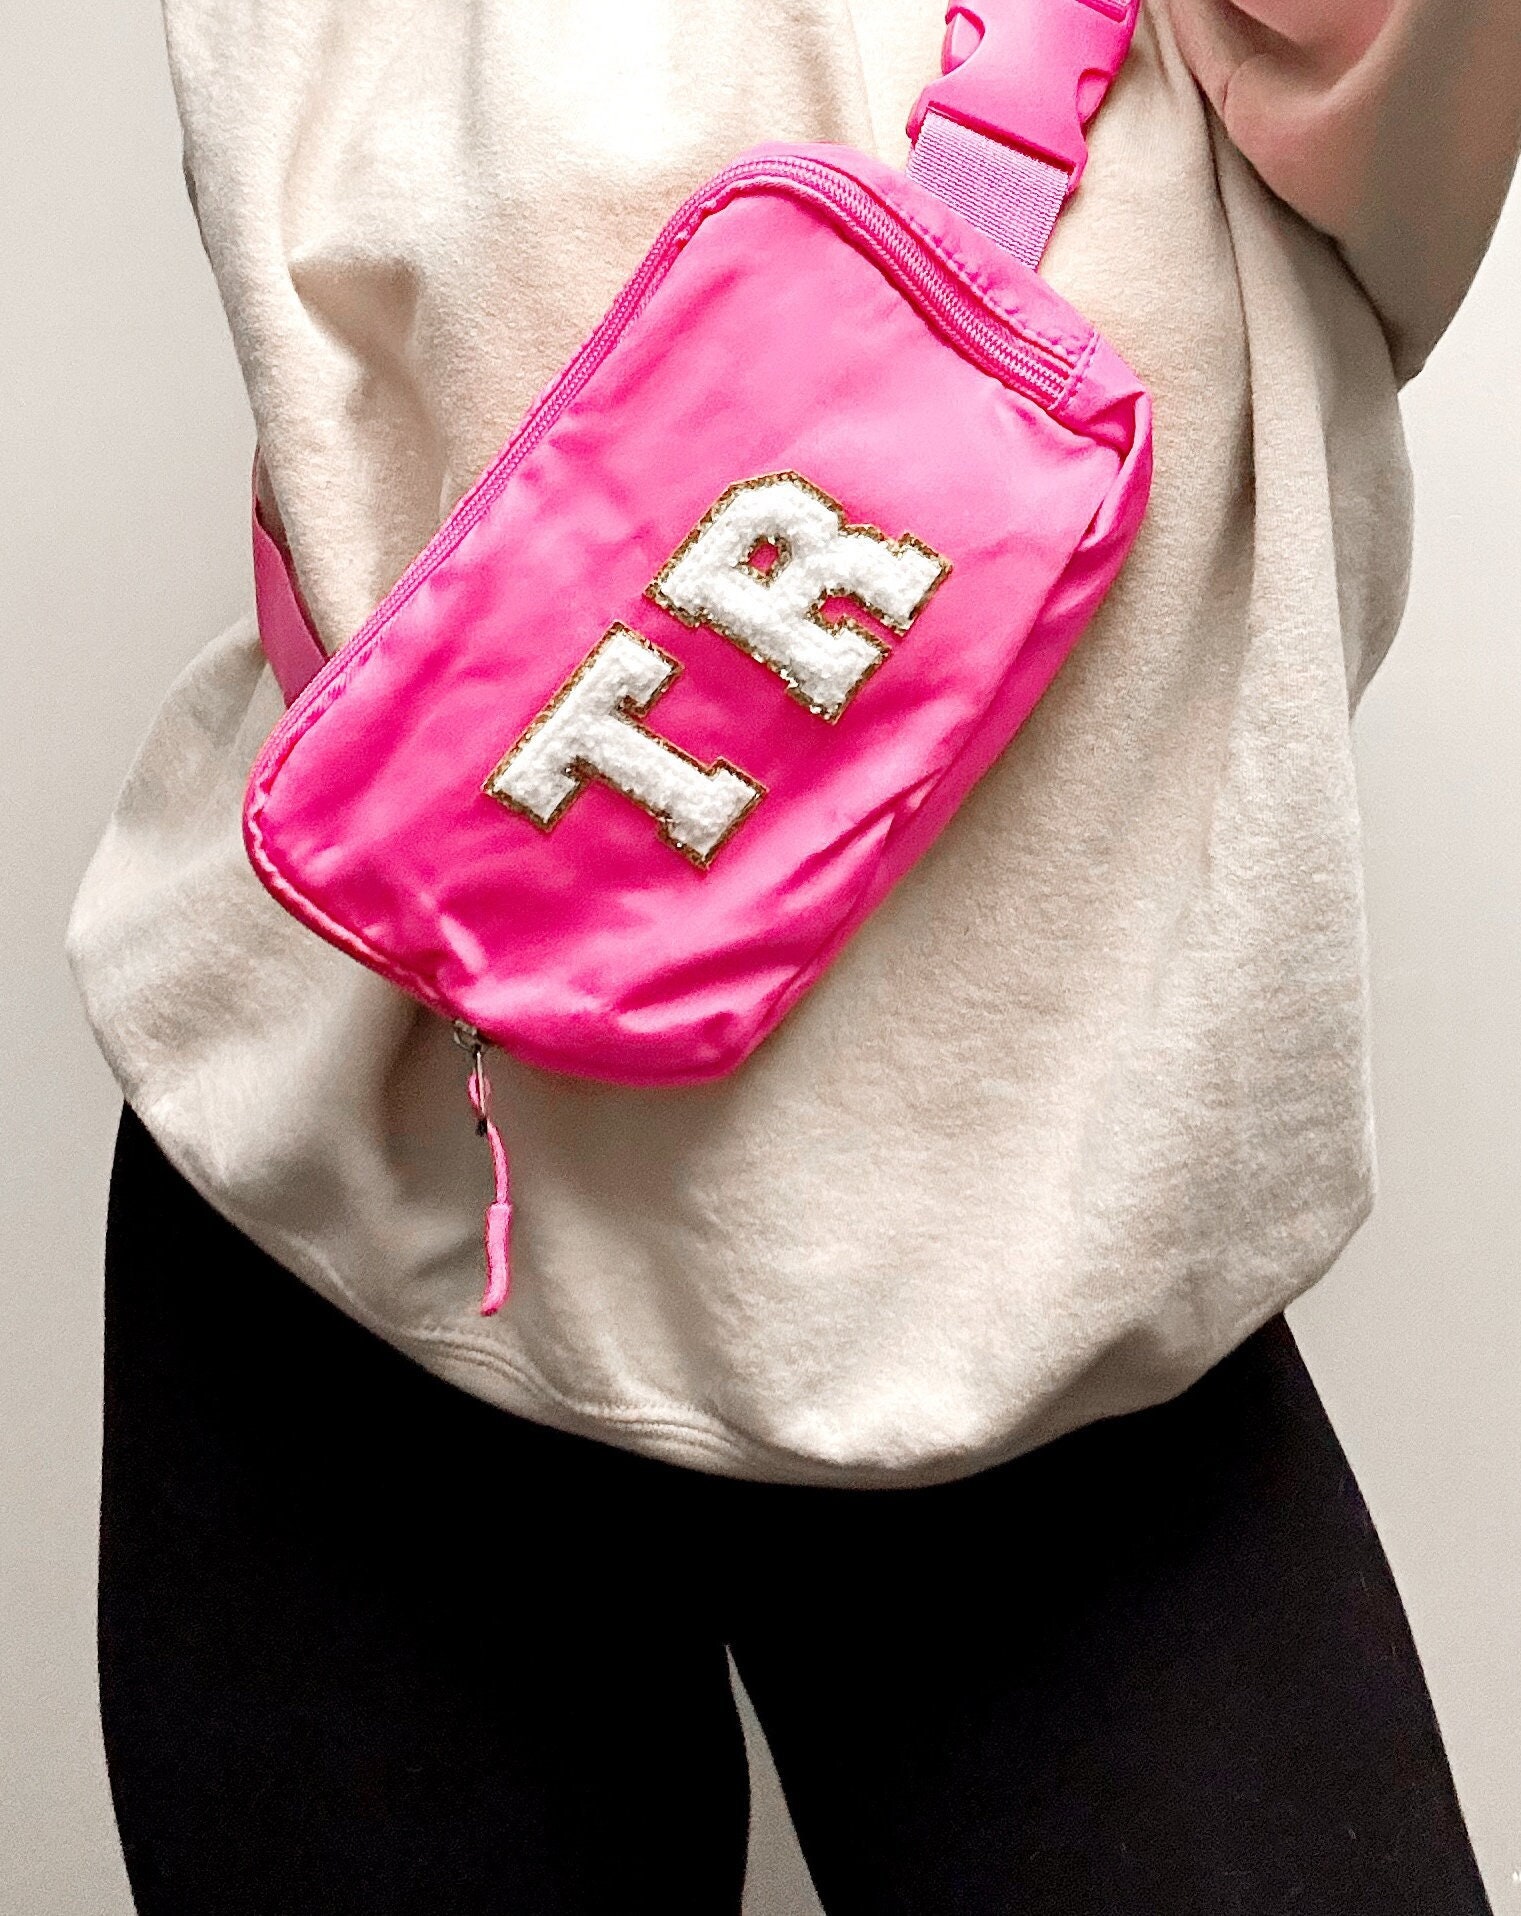 Monogrammed Belt Bag - Sprinkled With Pink